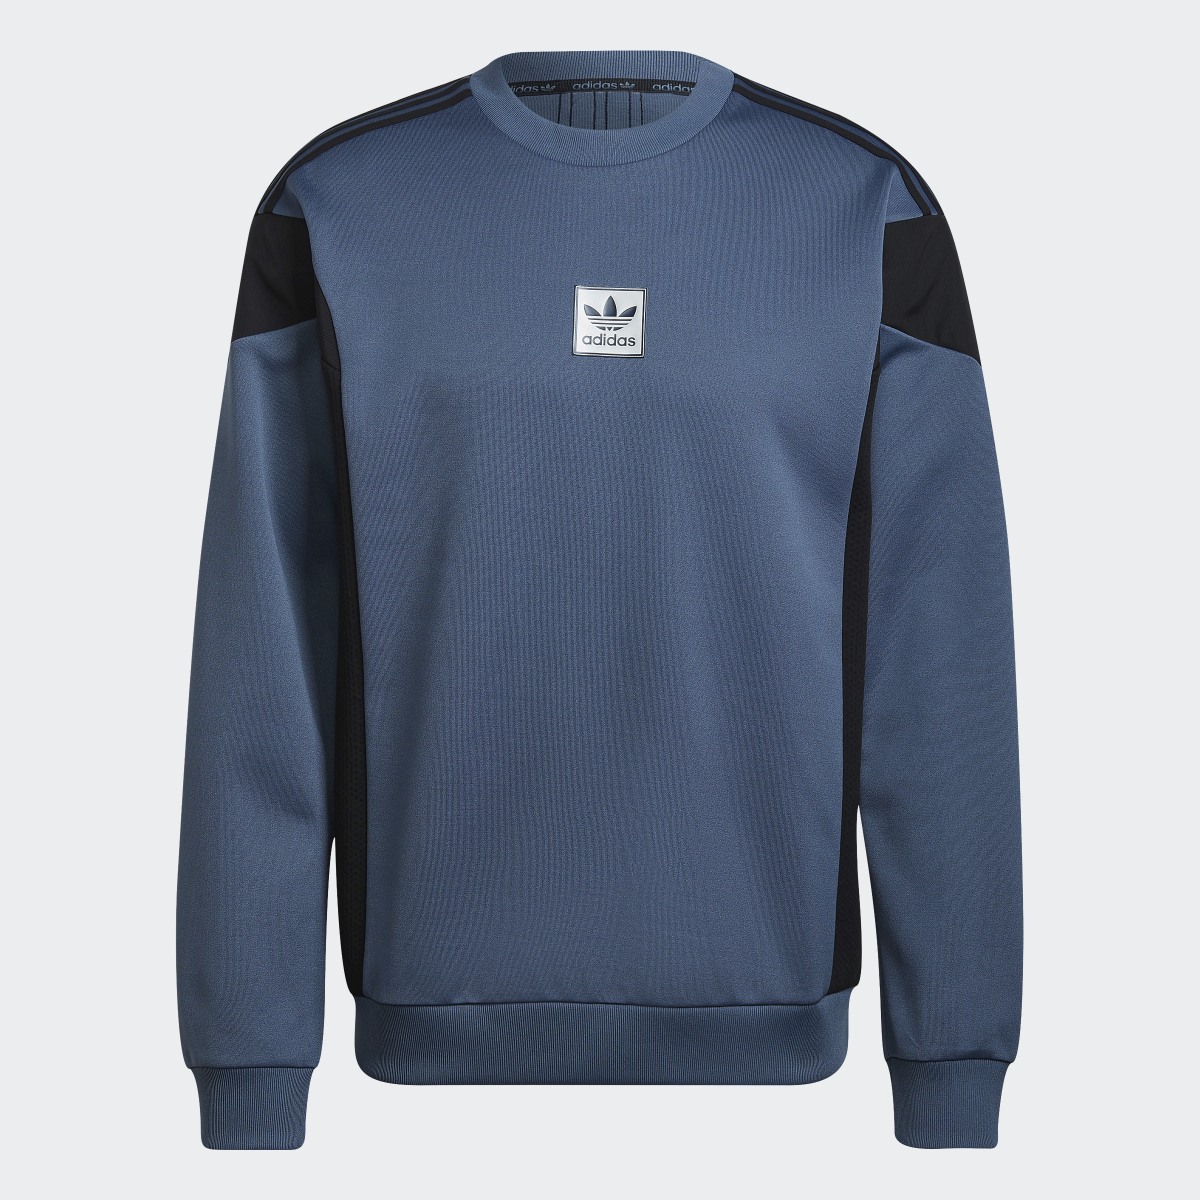 Adidas ID96 22 Crew Sweatshirt. 5